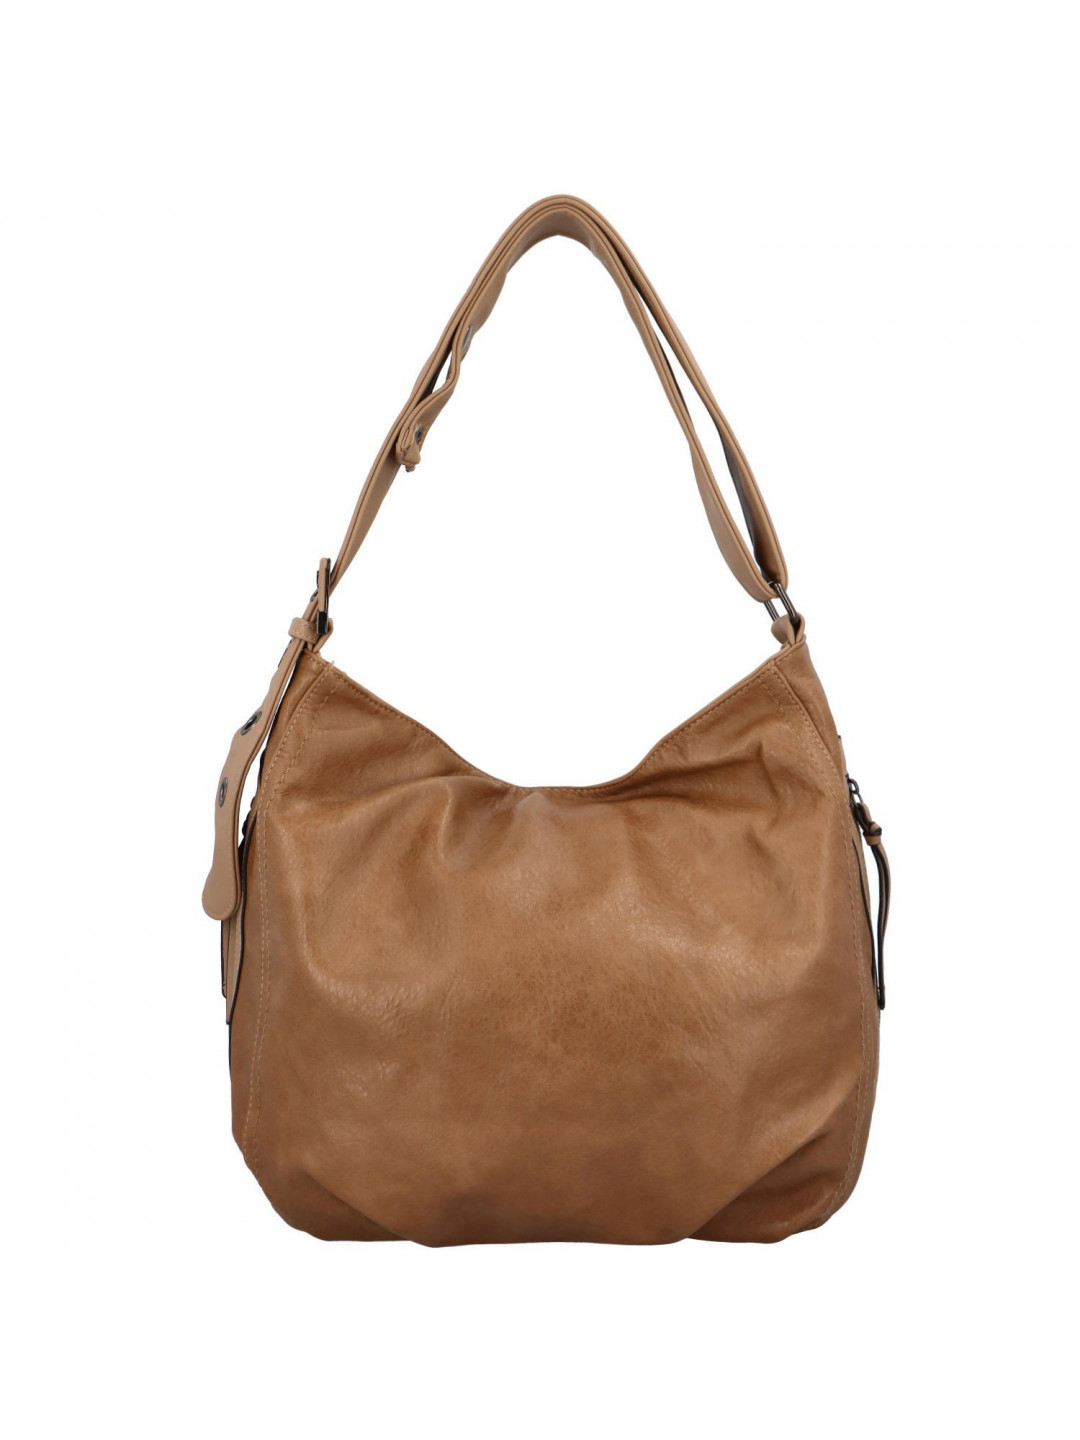 Dámská kabelka přes rameno zemitá – Romina & Co Bags Corazon